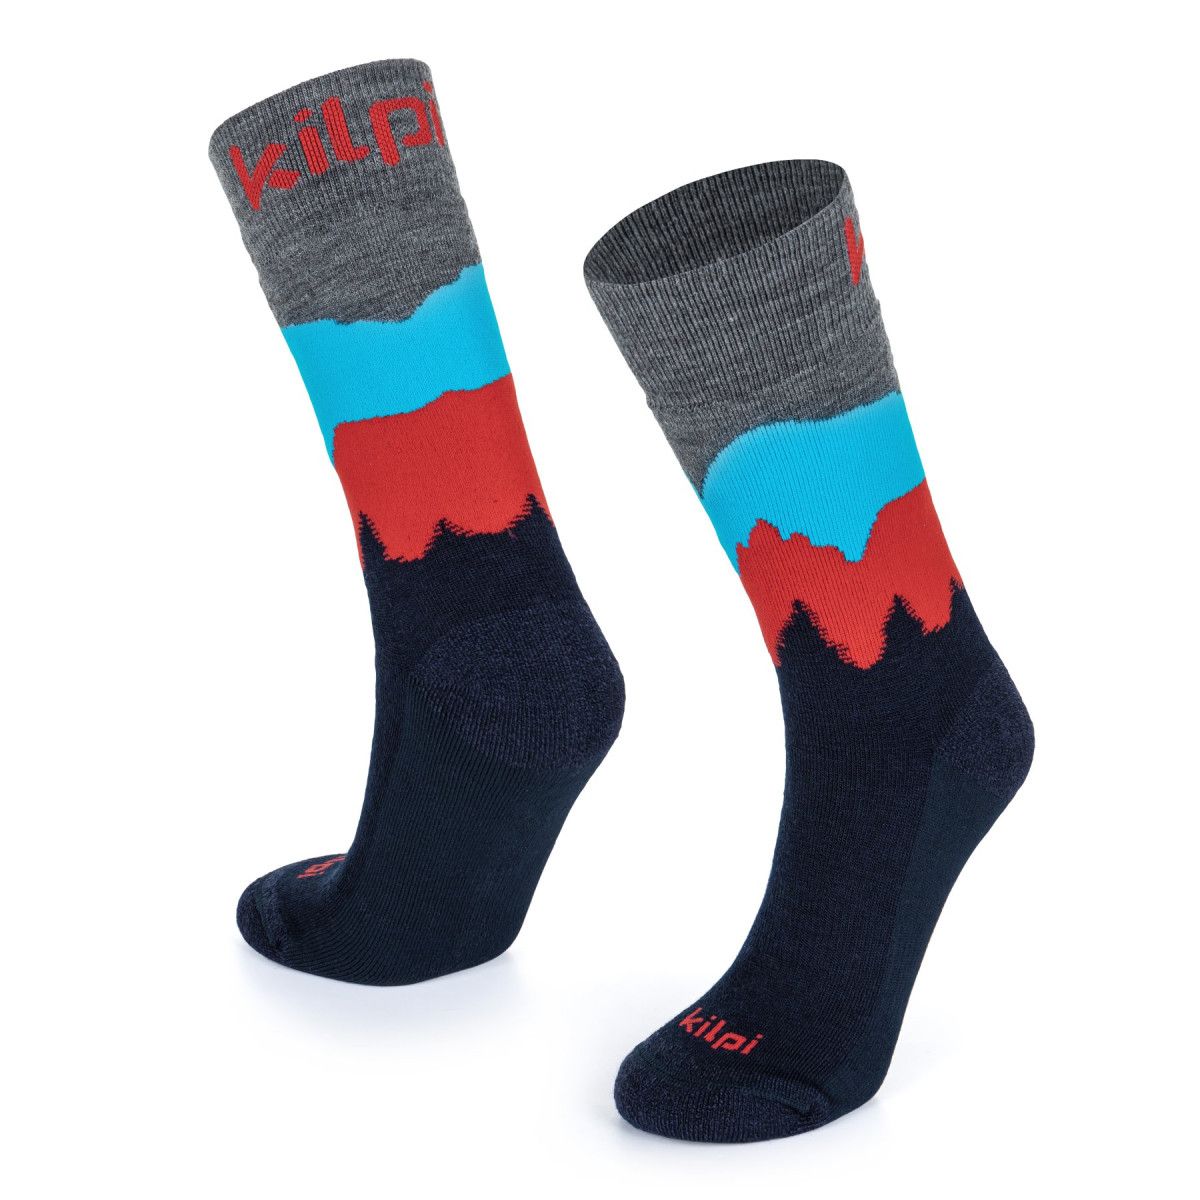 Unisex ponožky z merino vlny Kilpi NORS-U černé 42-45